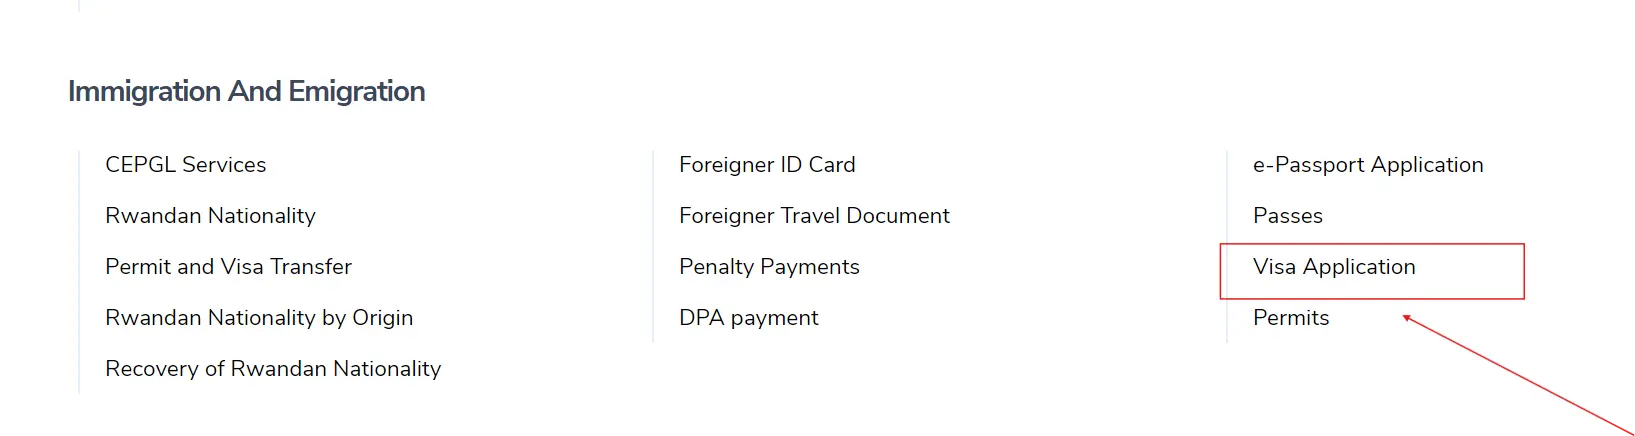 click on Visa Application